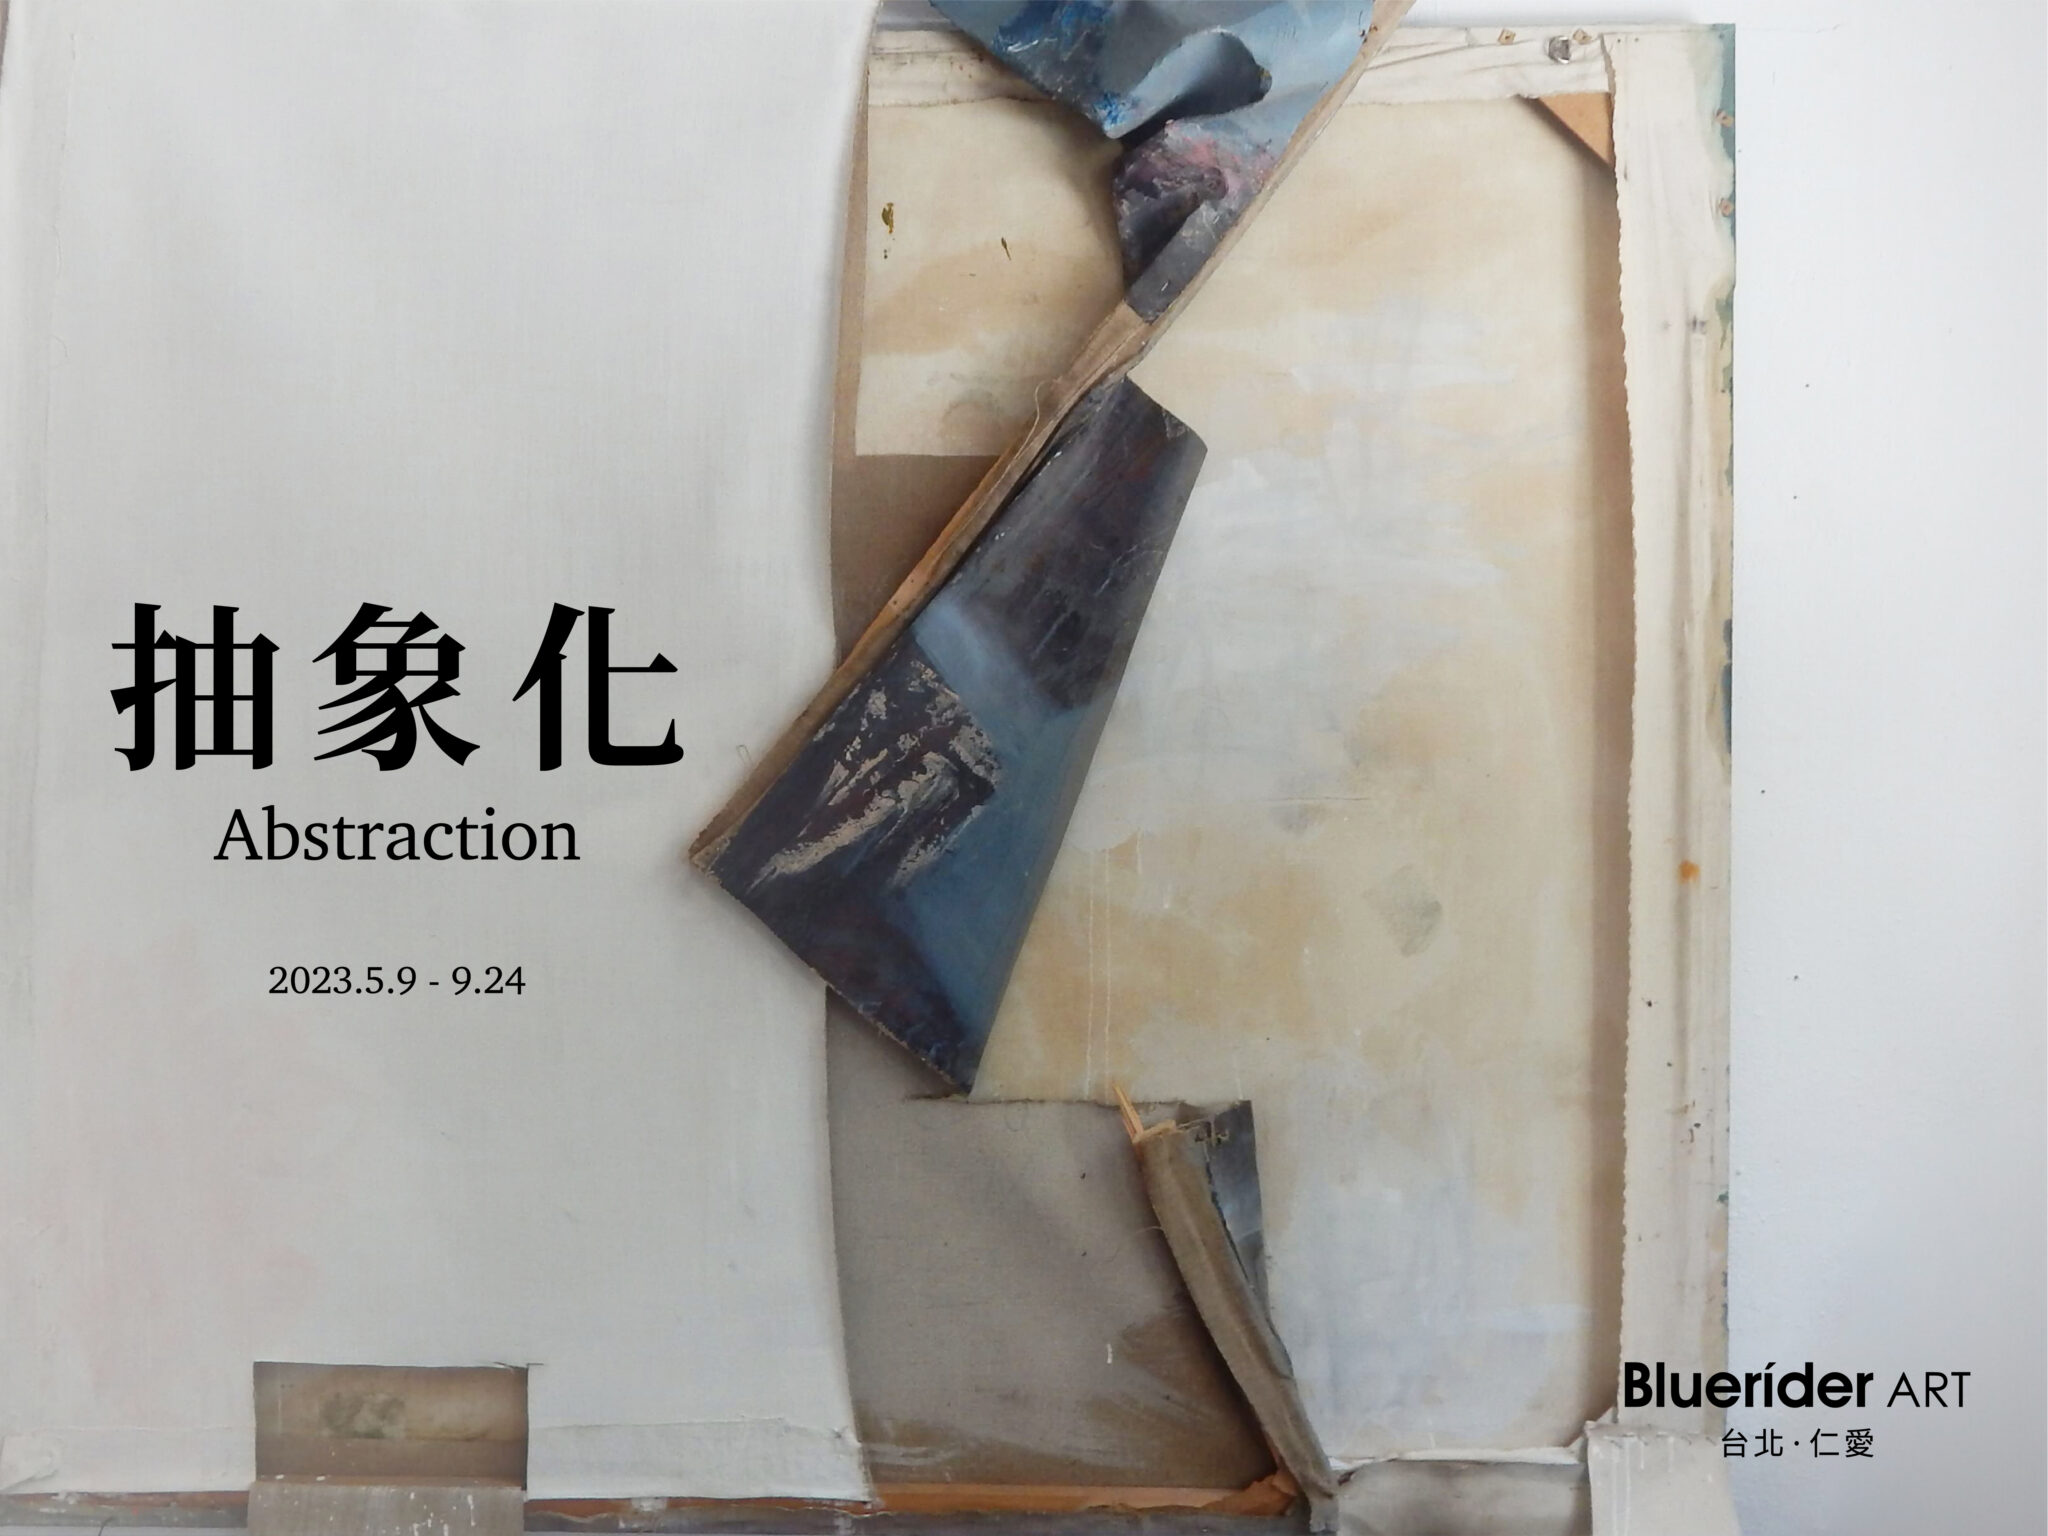 【台北·仁愛】 「抽象化Abstraction」 – 大尺幅新作作品展 2023.5.9-9.24